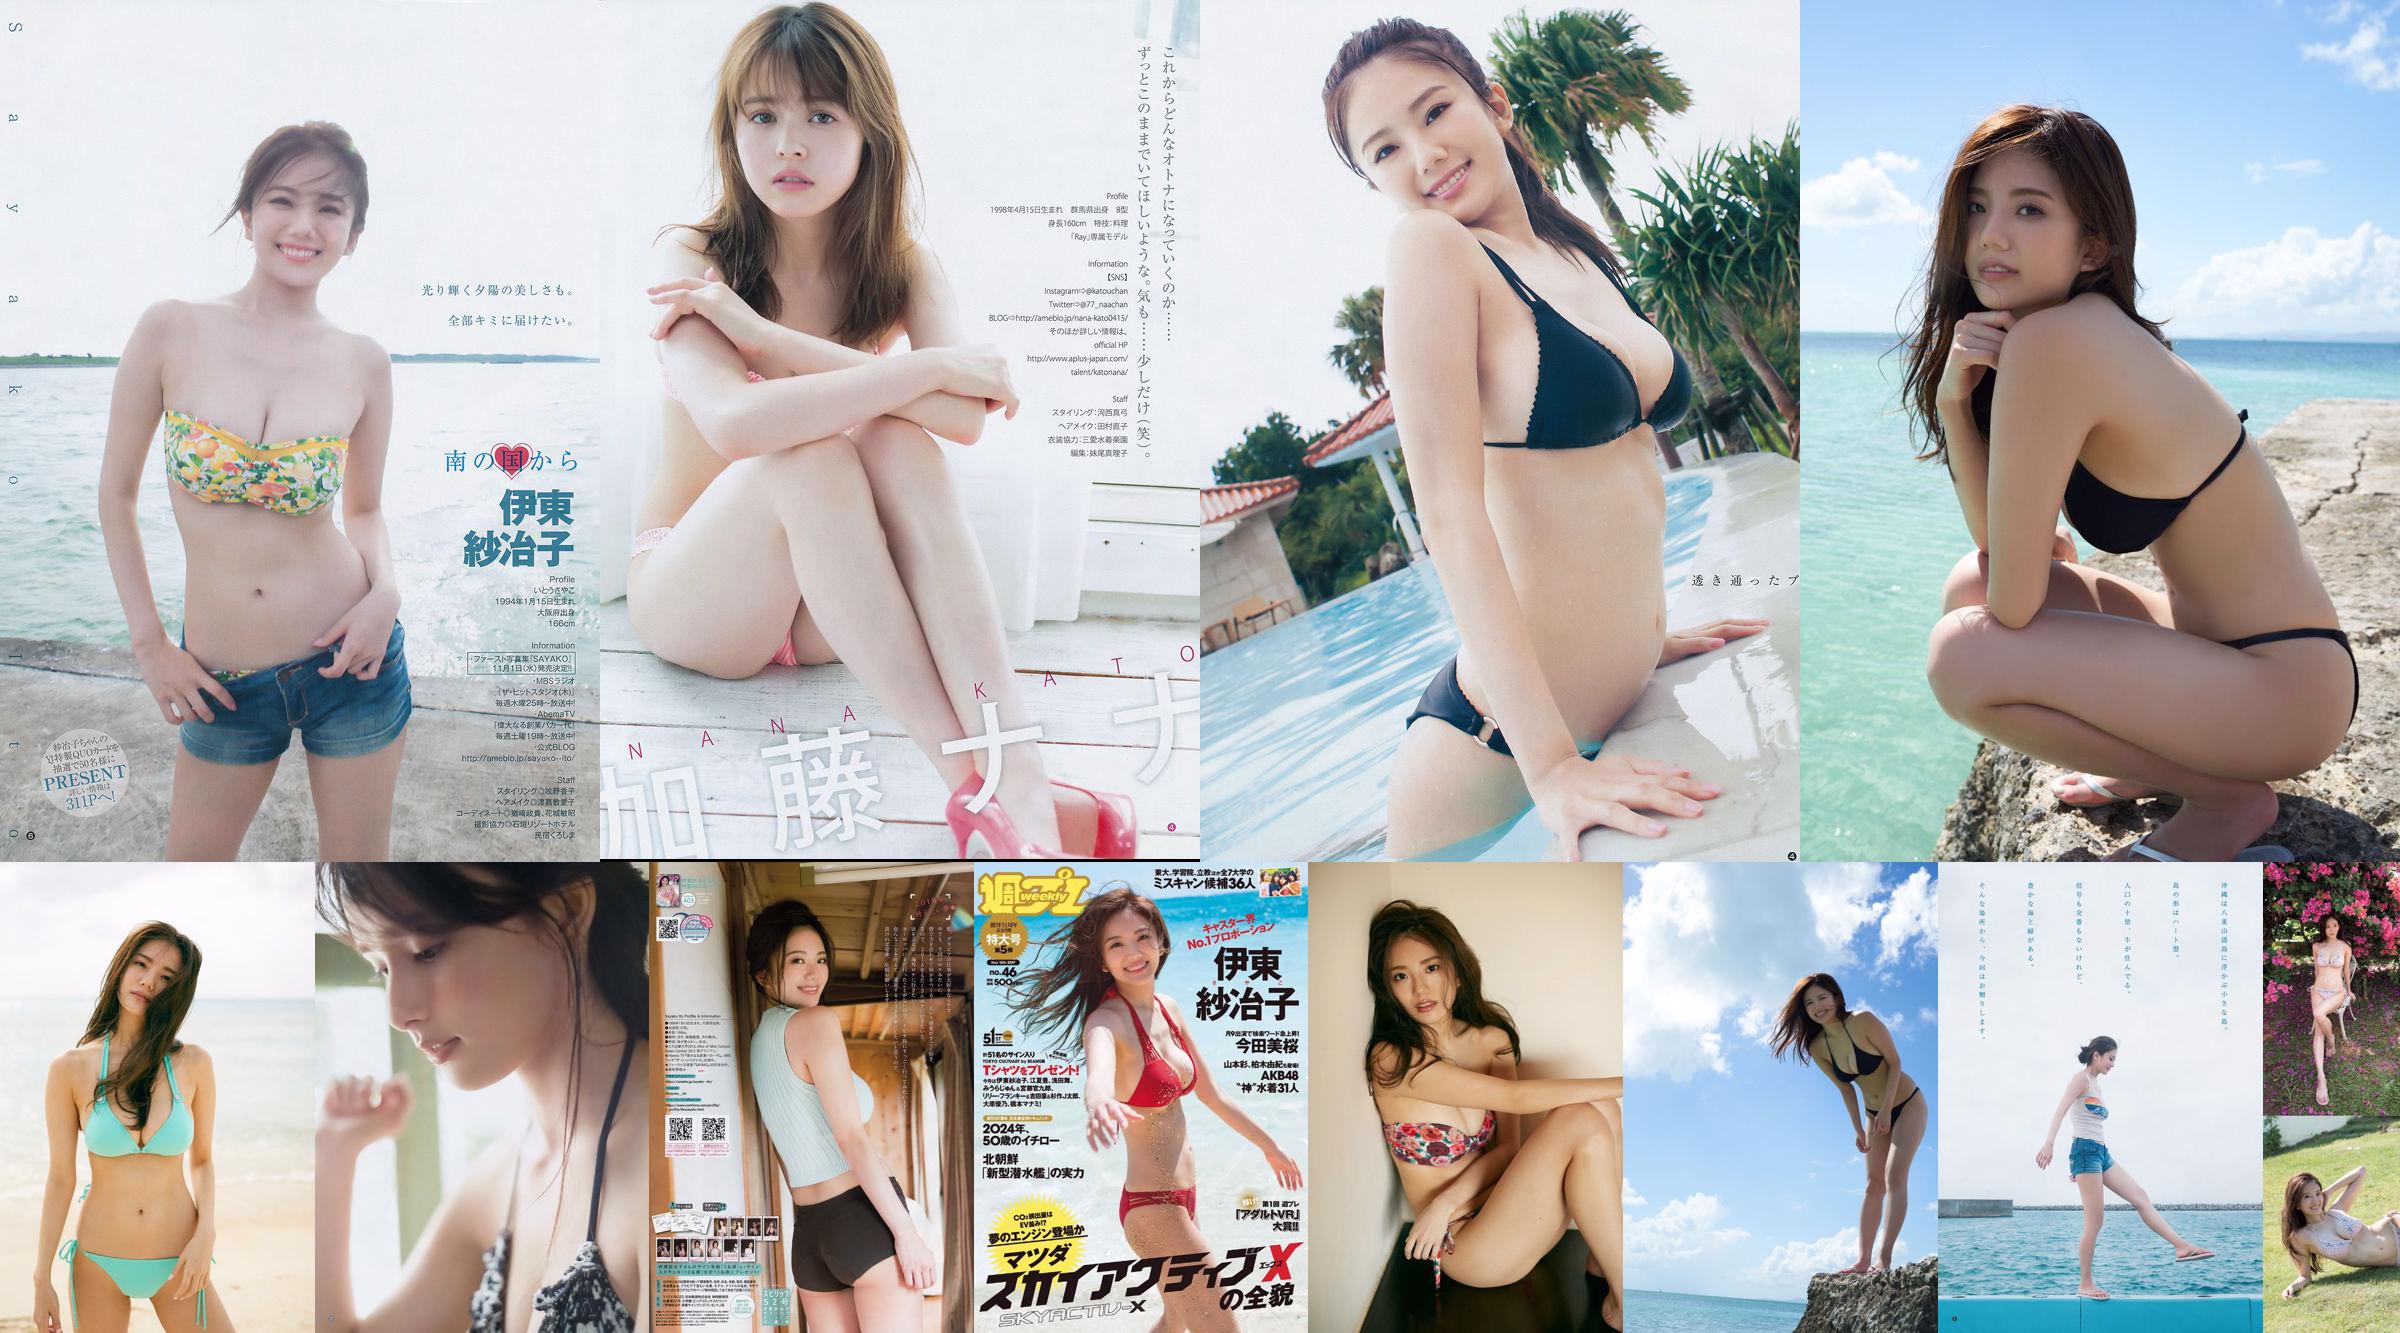 Ito Sayeko, Mima Reiko, Sugimoto Yumi, Sato Reina, Yoshiki りさ Toyama Akiko, Naninao [Weekly Playboy] 2016 No.36 Photo Magazine No.09c91d Page 3